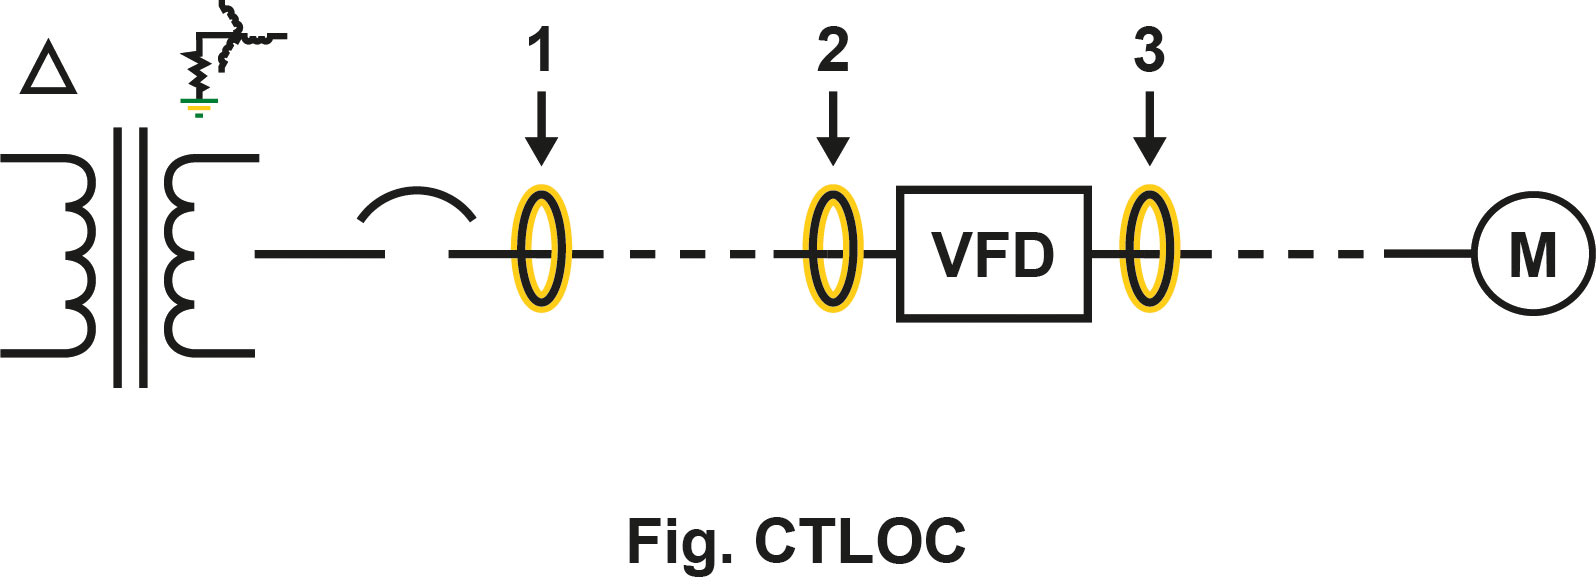 Locatie van stroomtransformator voor aardlekbeveiliging van aandrijving met variabele frequentie